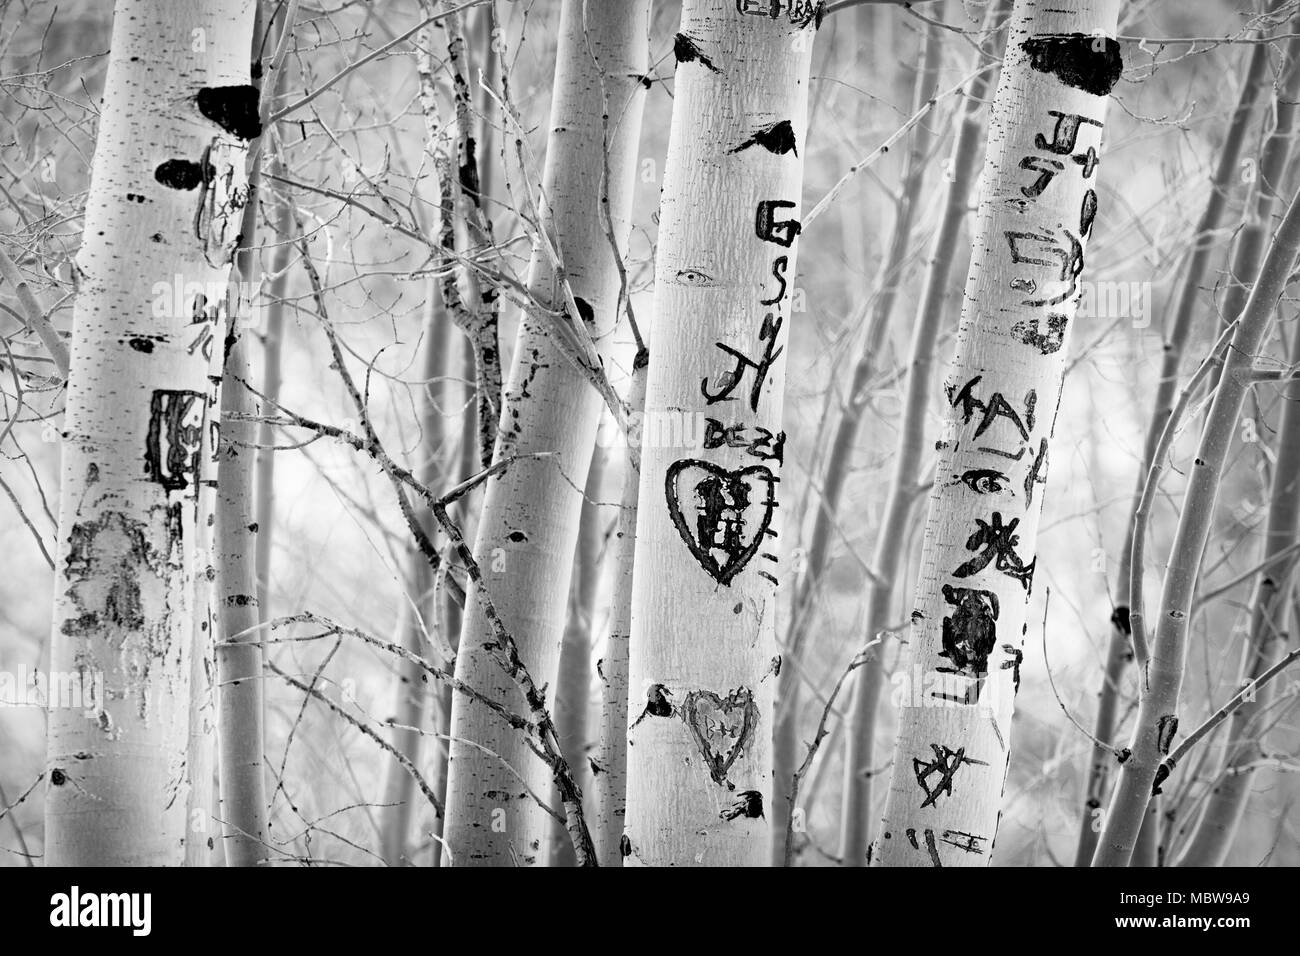 Beschädigte Aspen Bäume nach Liebhaber ihre Initialen und Grafitti in der Rinde schnitzen als Zeichen der ewigen Liebe. Stockfoto